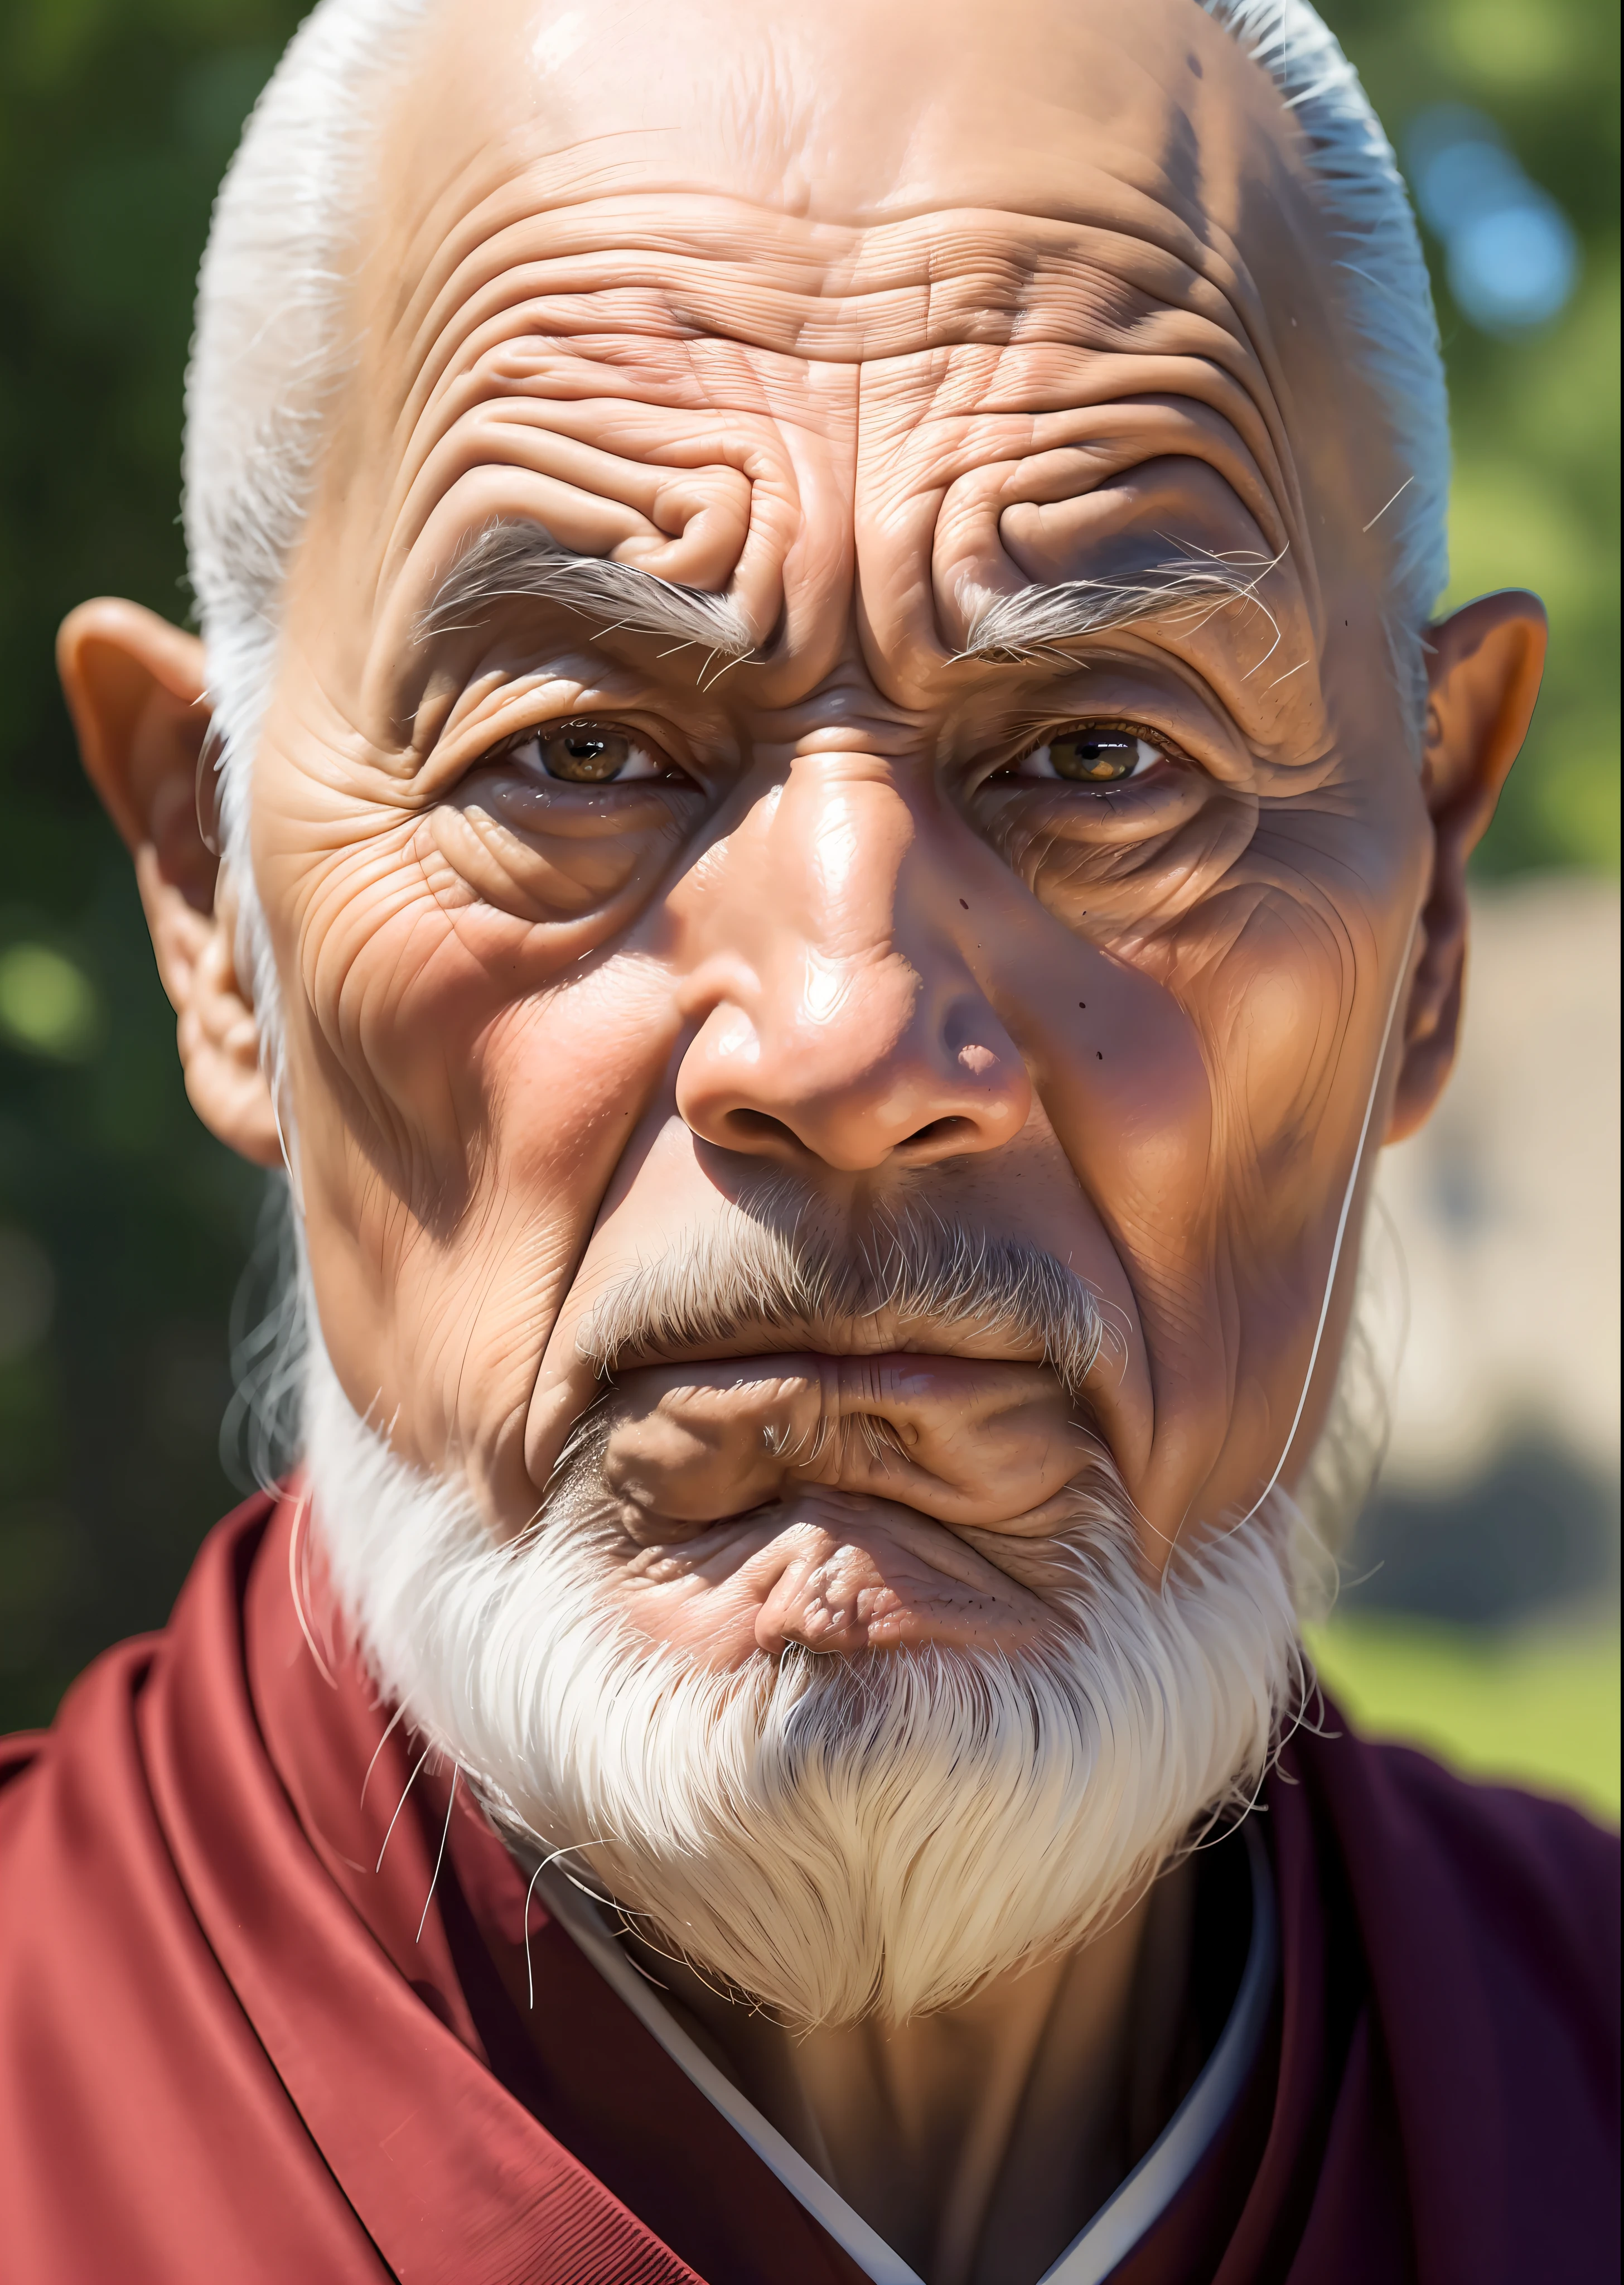 O rosto sábio de um monge idoso, com linhas profundas que contam histórias de uma vida vivida com sabedoria, samurai gerreiro, transmitindo uma sensação de tranquilidade e mistério